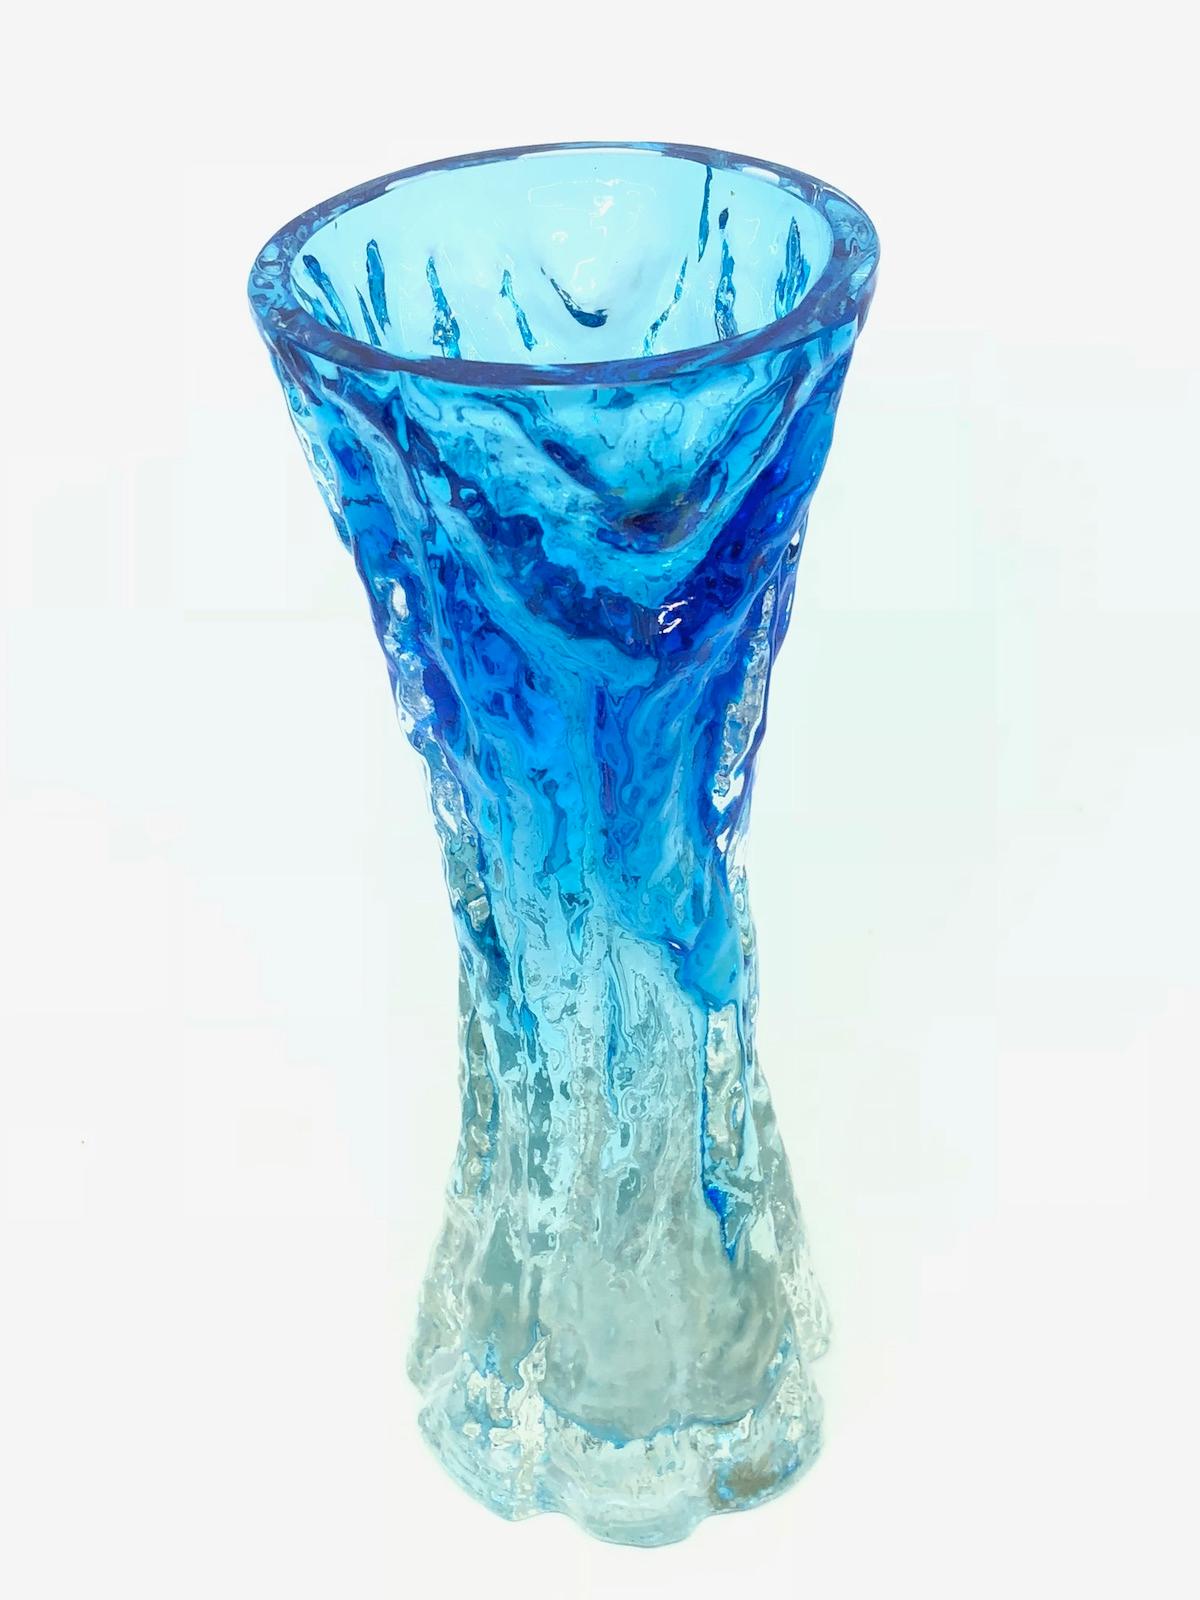 Merveilleux vase allemand moderne du milieu du siècle par Ingrid Glas, vers 1970. Ce magnifique vase bleu vif et transparent apporte une touche d'amusement et de fantaisie à n'importe quelle pièce avec sa forme fantaisiste texturée en forme d'écorce